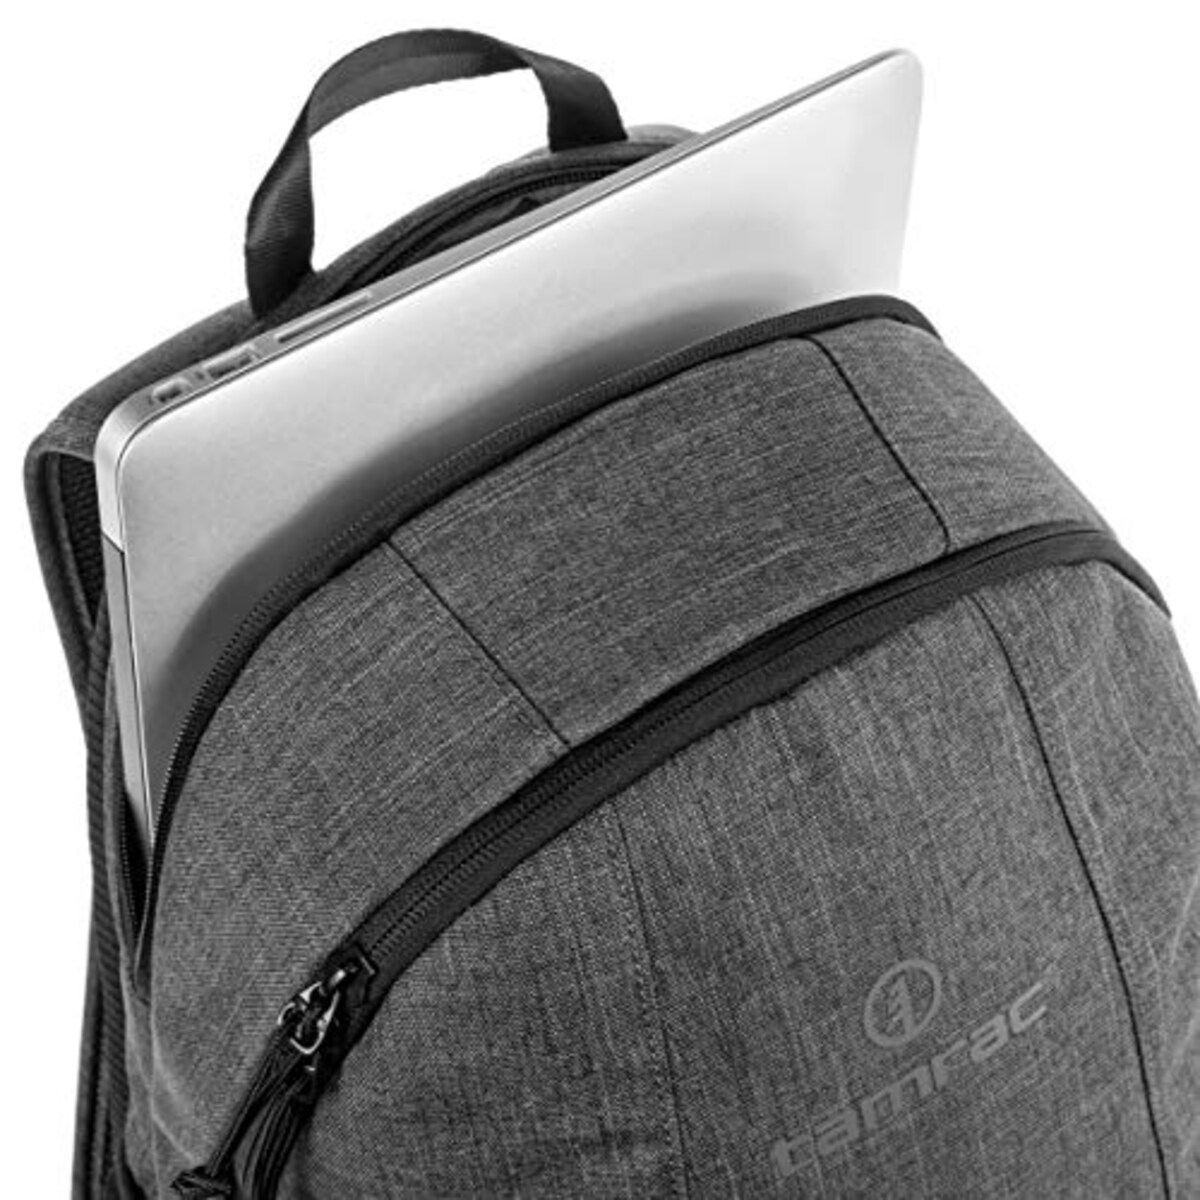  タムラック 【国内正規品】 tamrac カメラリュック TRADEWIND Backpack 18 小型一眼レフ/ミラーレスカメラ用 グレー 18L 002726画像7 